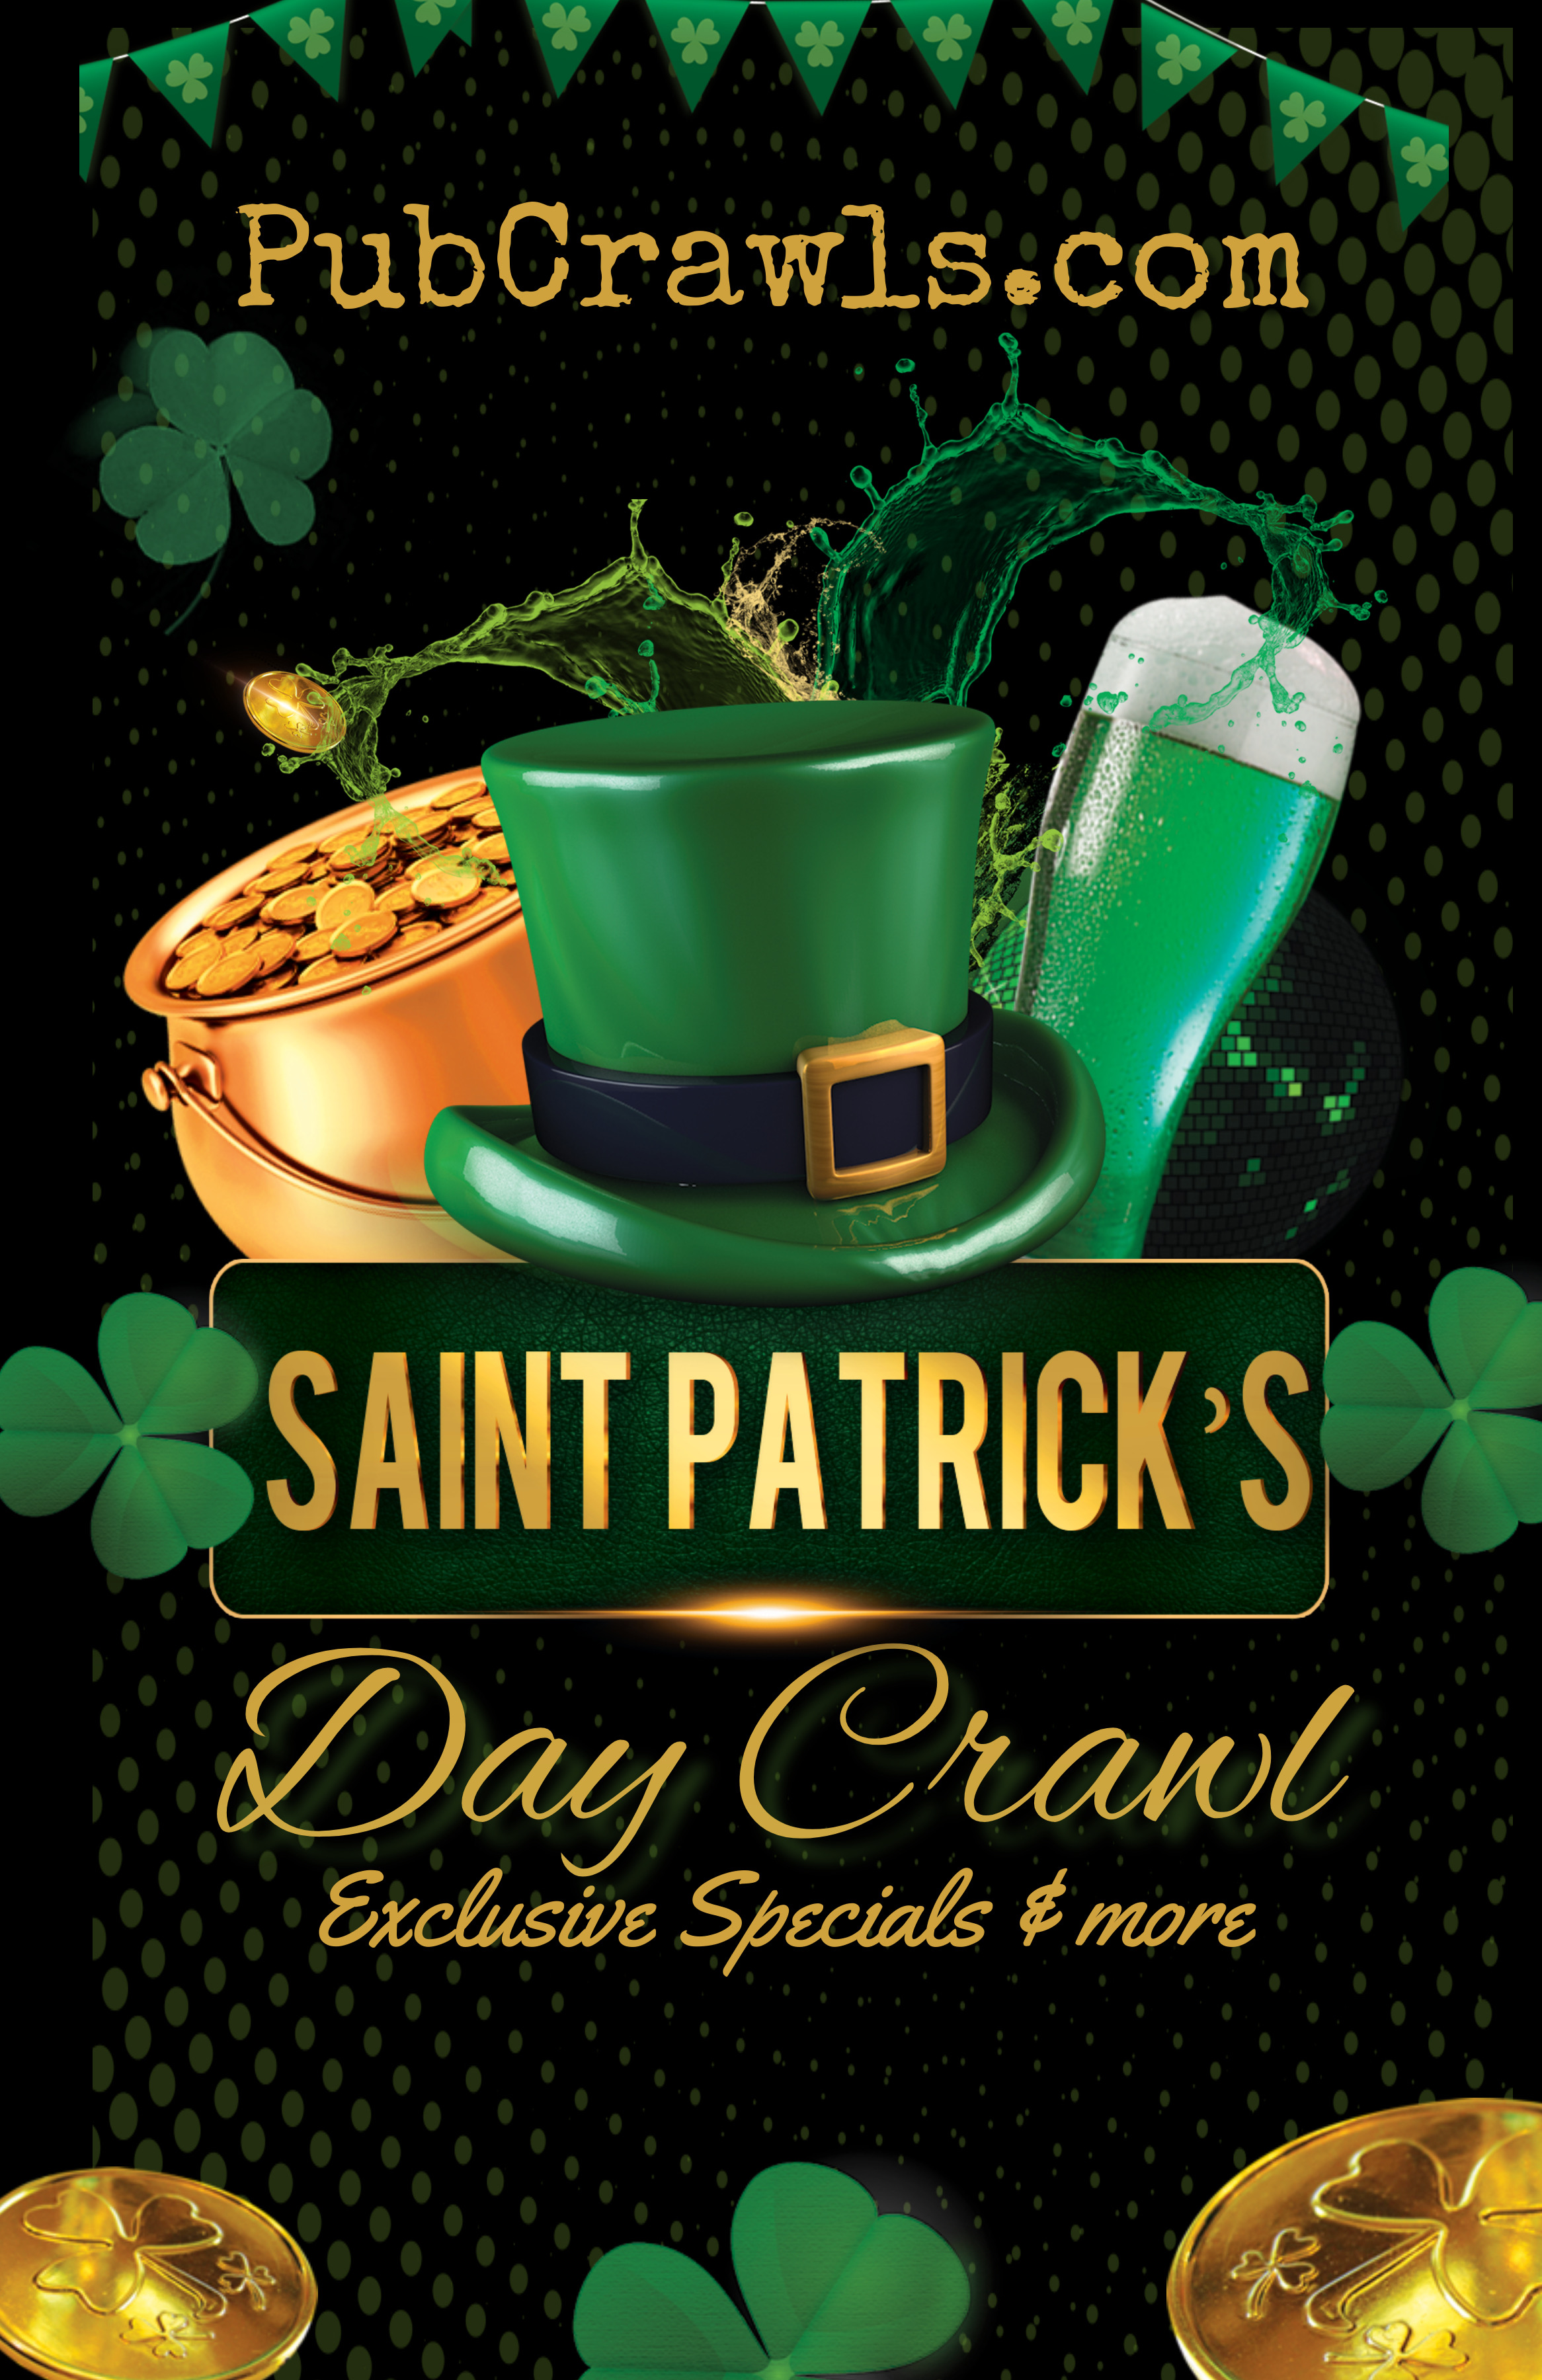 Savannah Official St Patrick's Day Bar Crawl